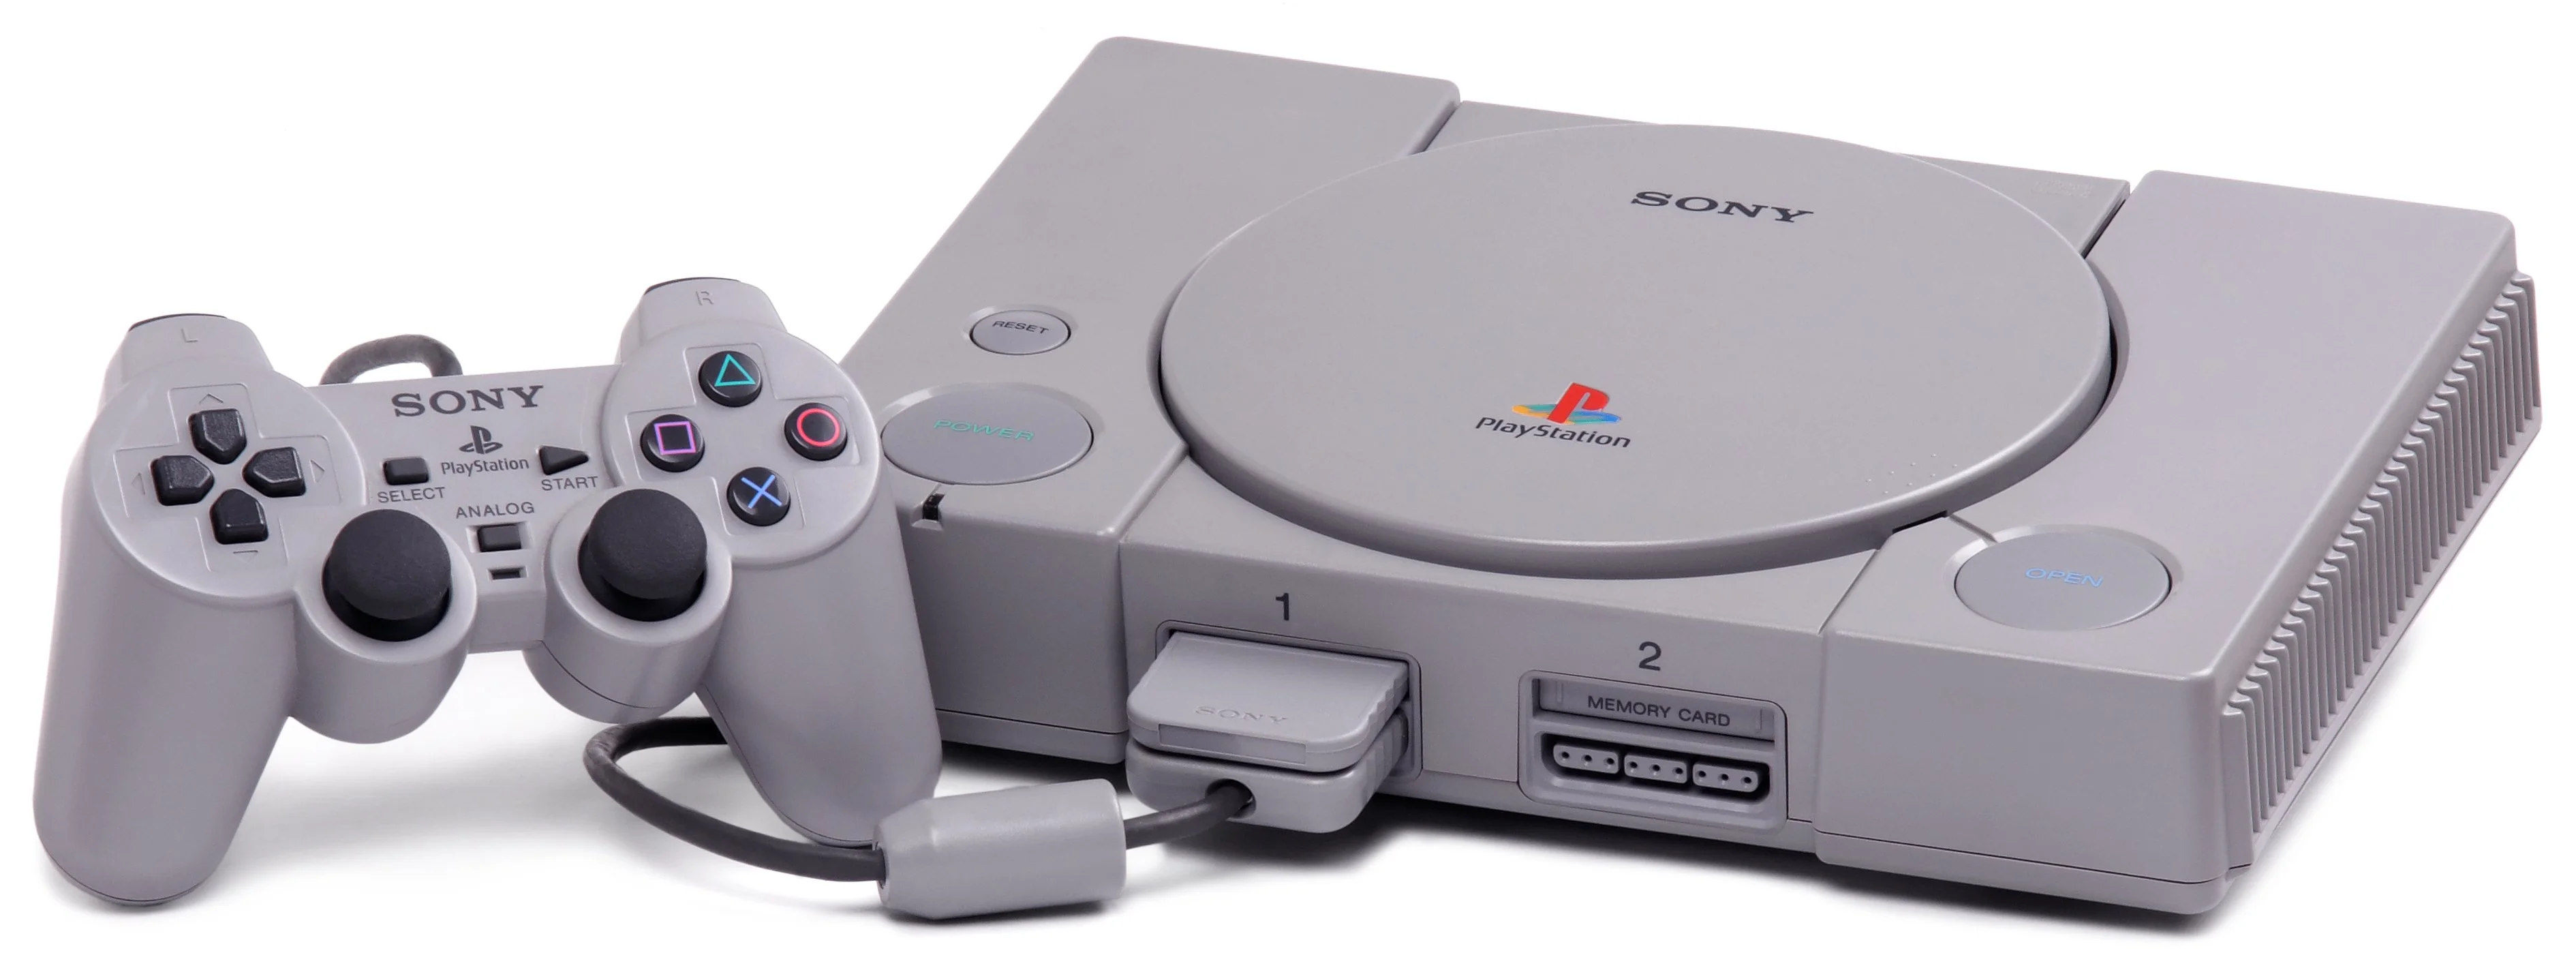 Эволюция PlayStation - фото 2